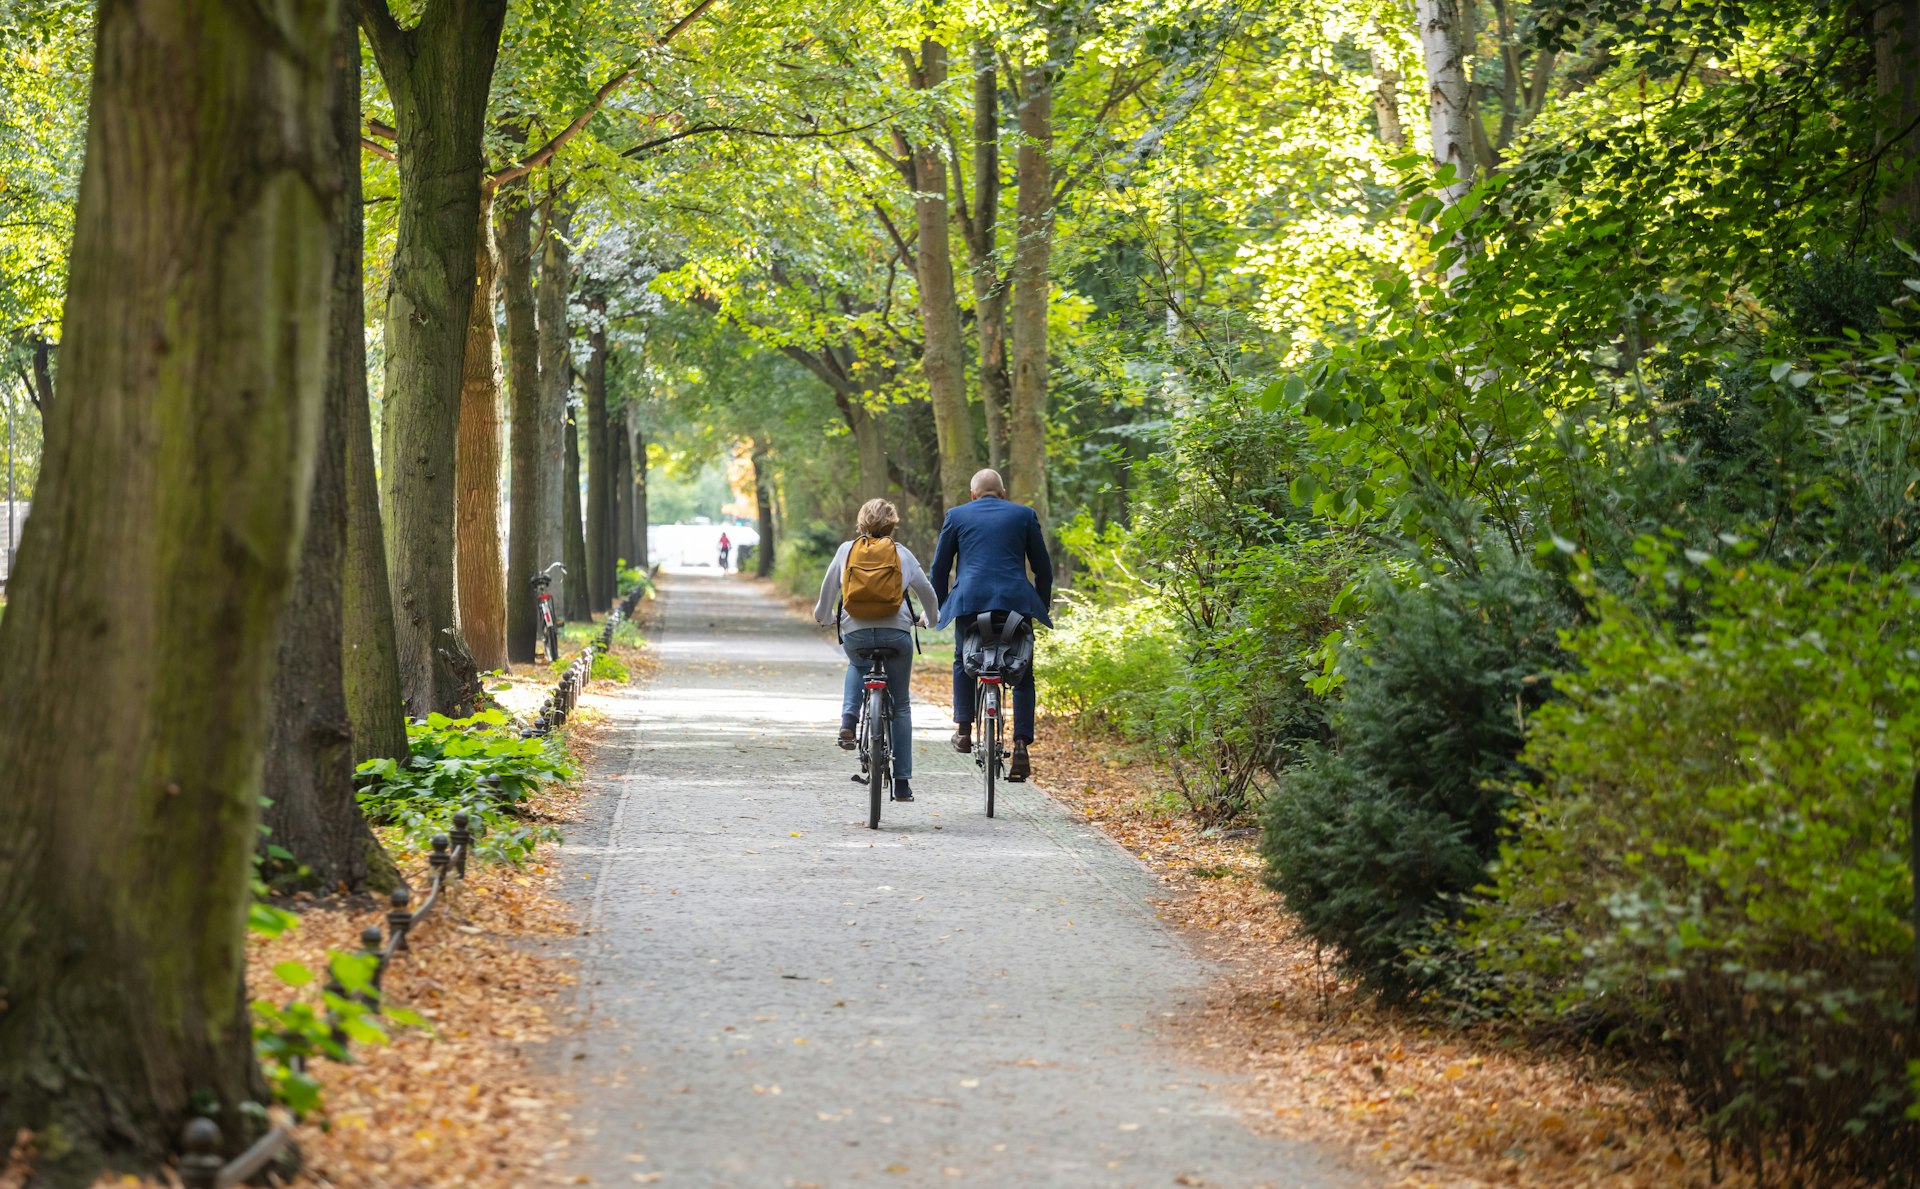 Two people cycle through Tiergarten Park in Berlin